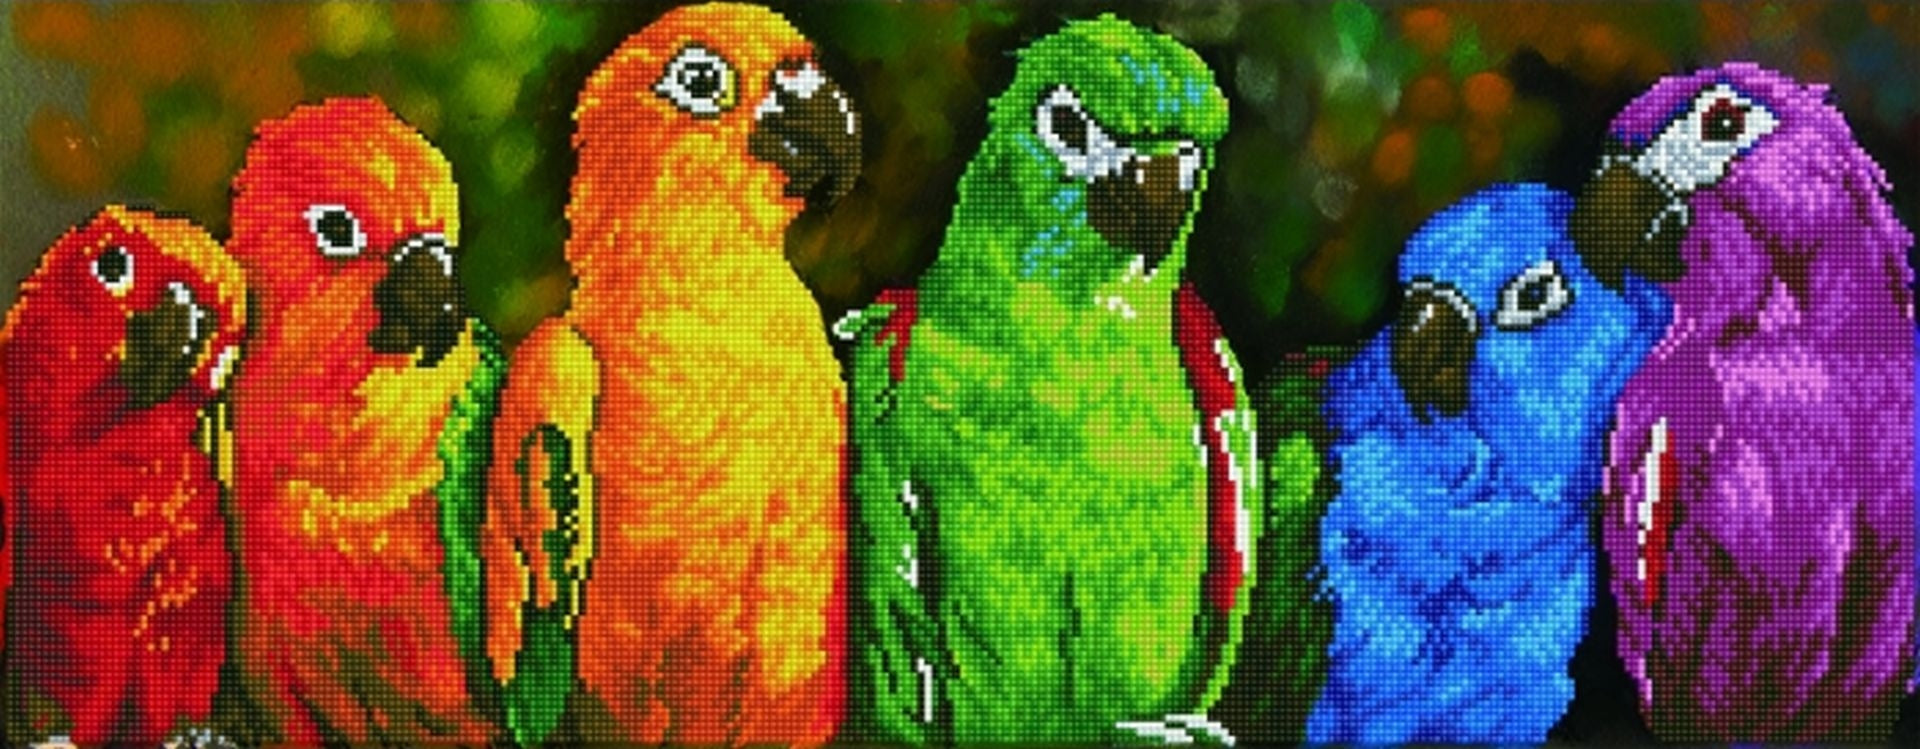 Rainbow Parrots - DDOTZ